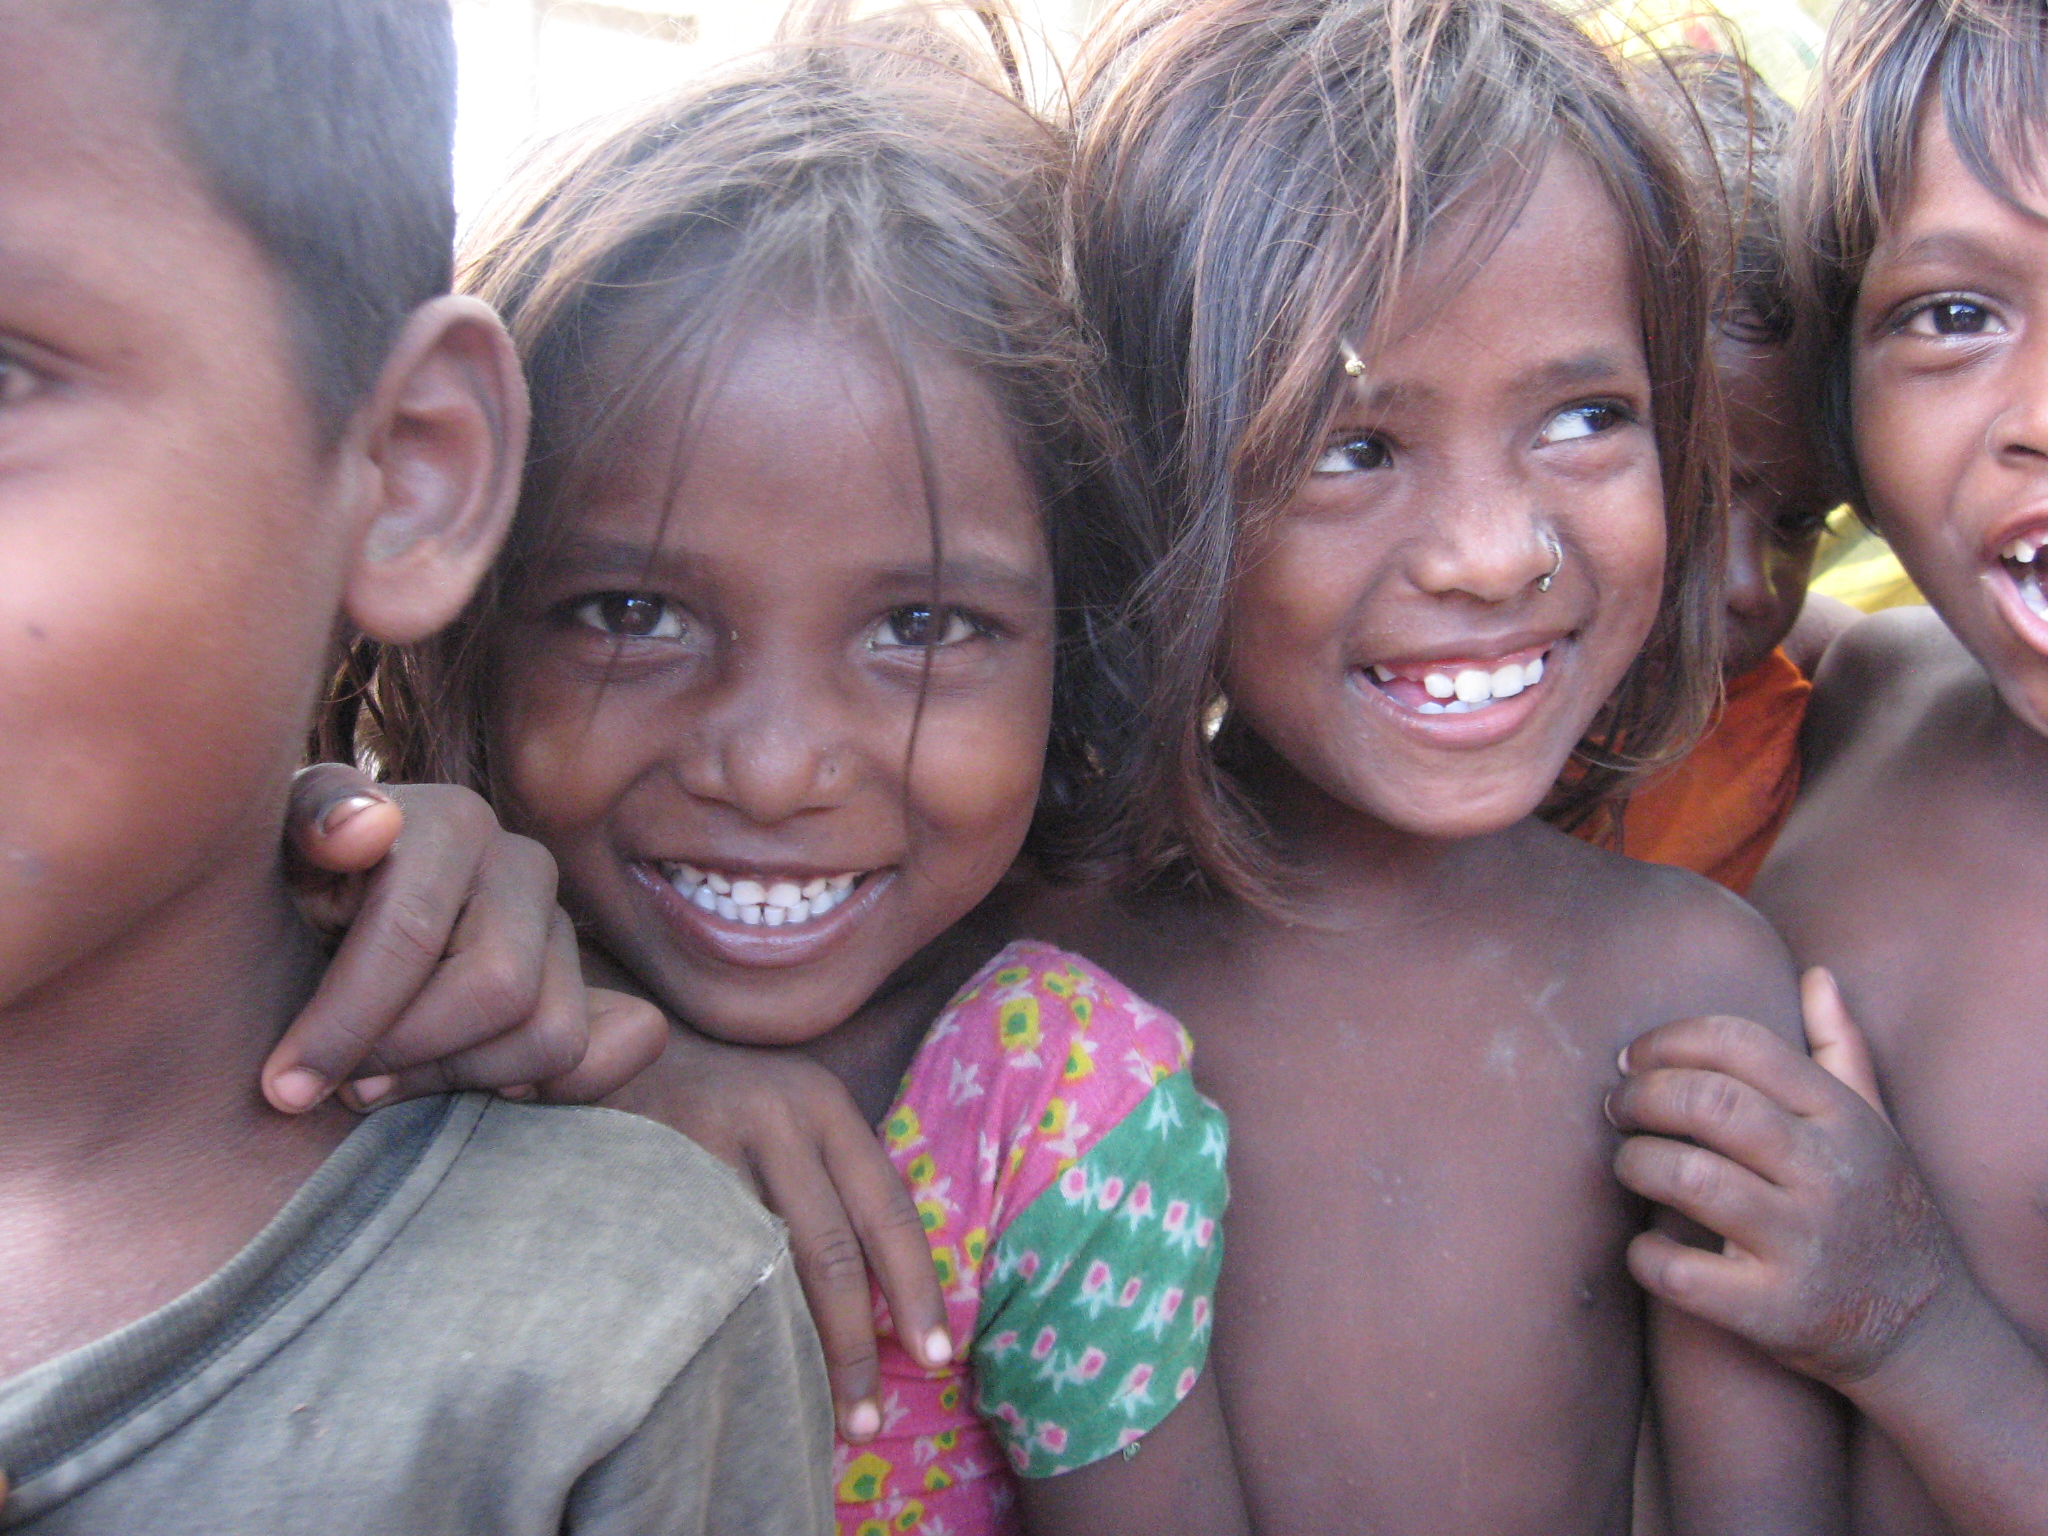 Dalit children